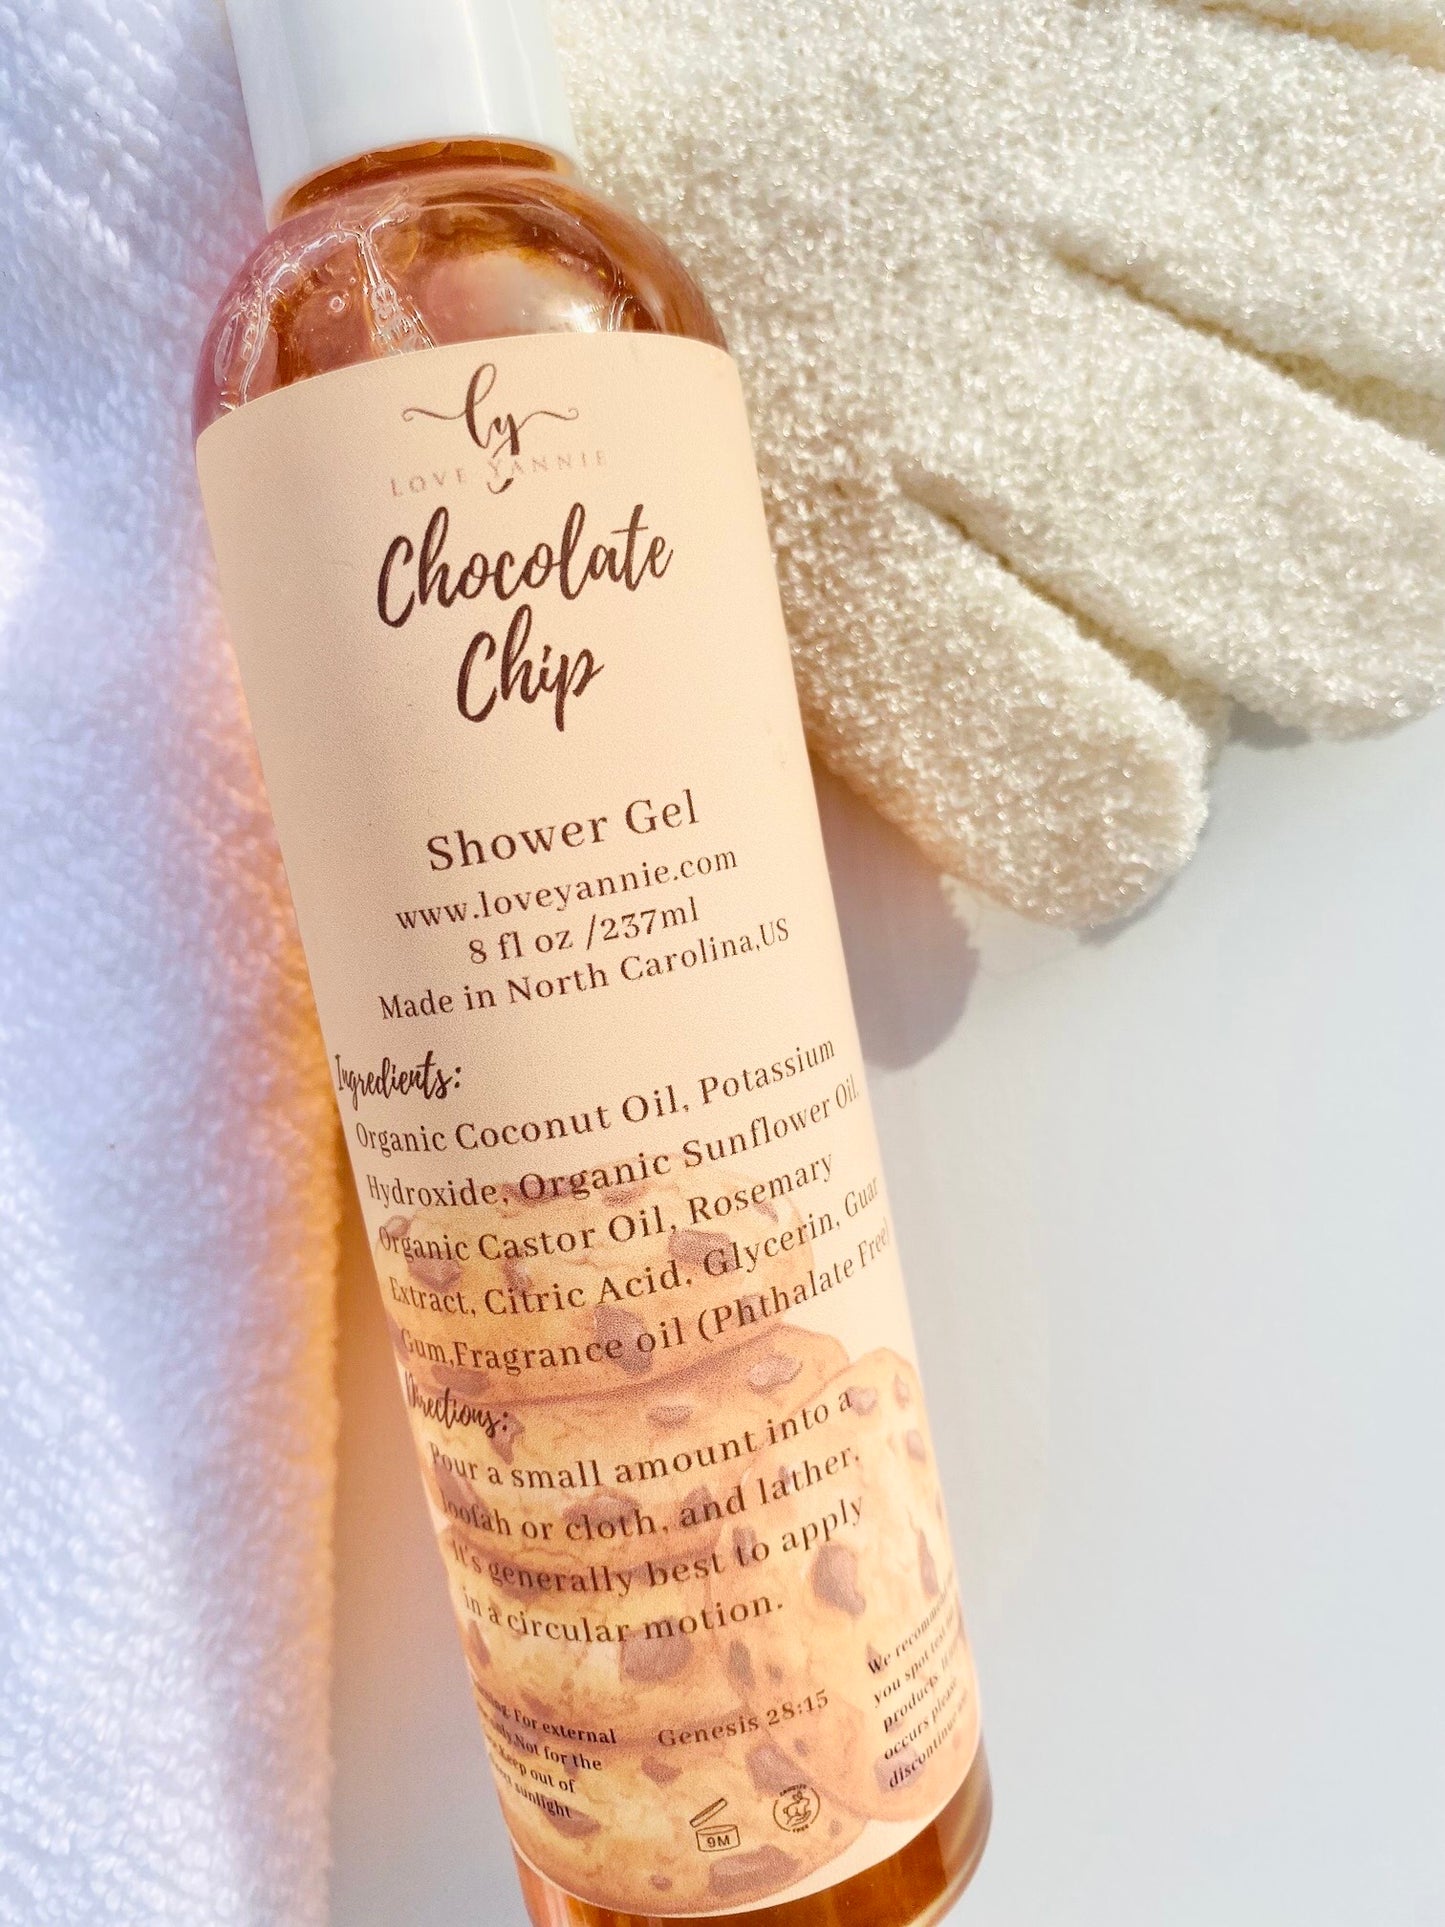 Chocolate Chip Shower Gel